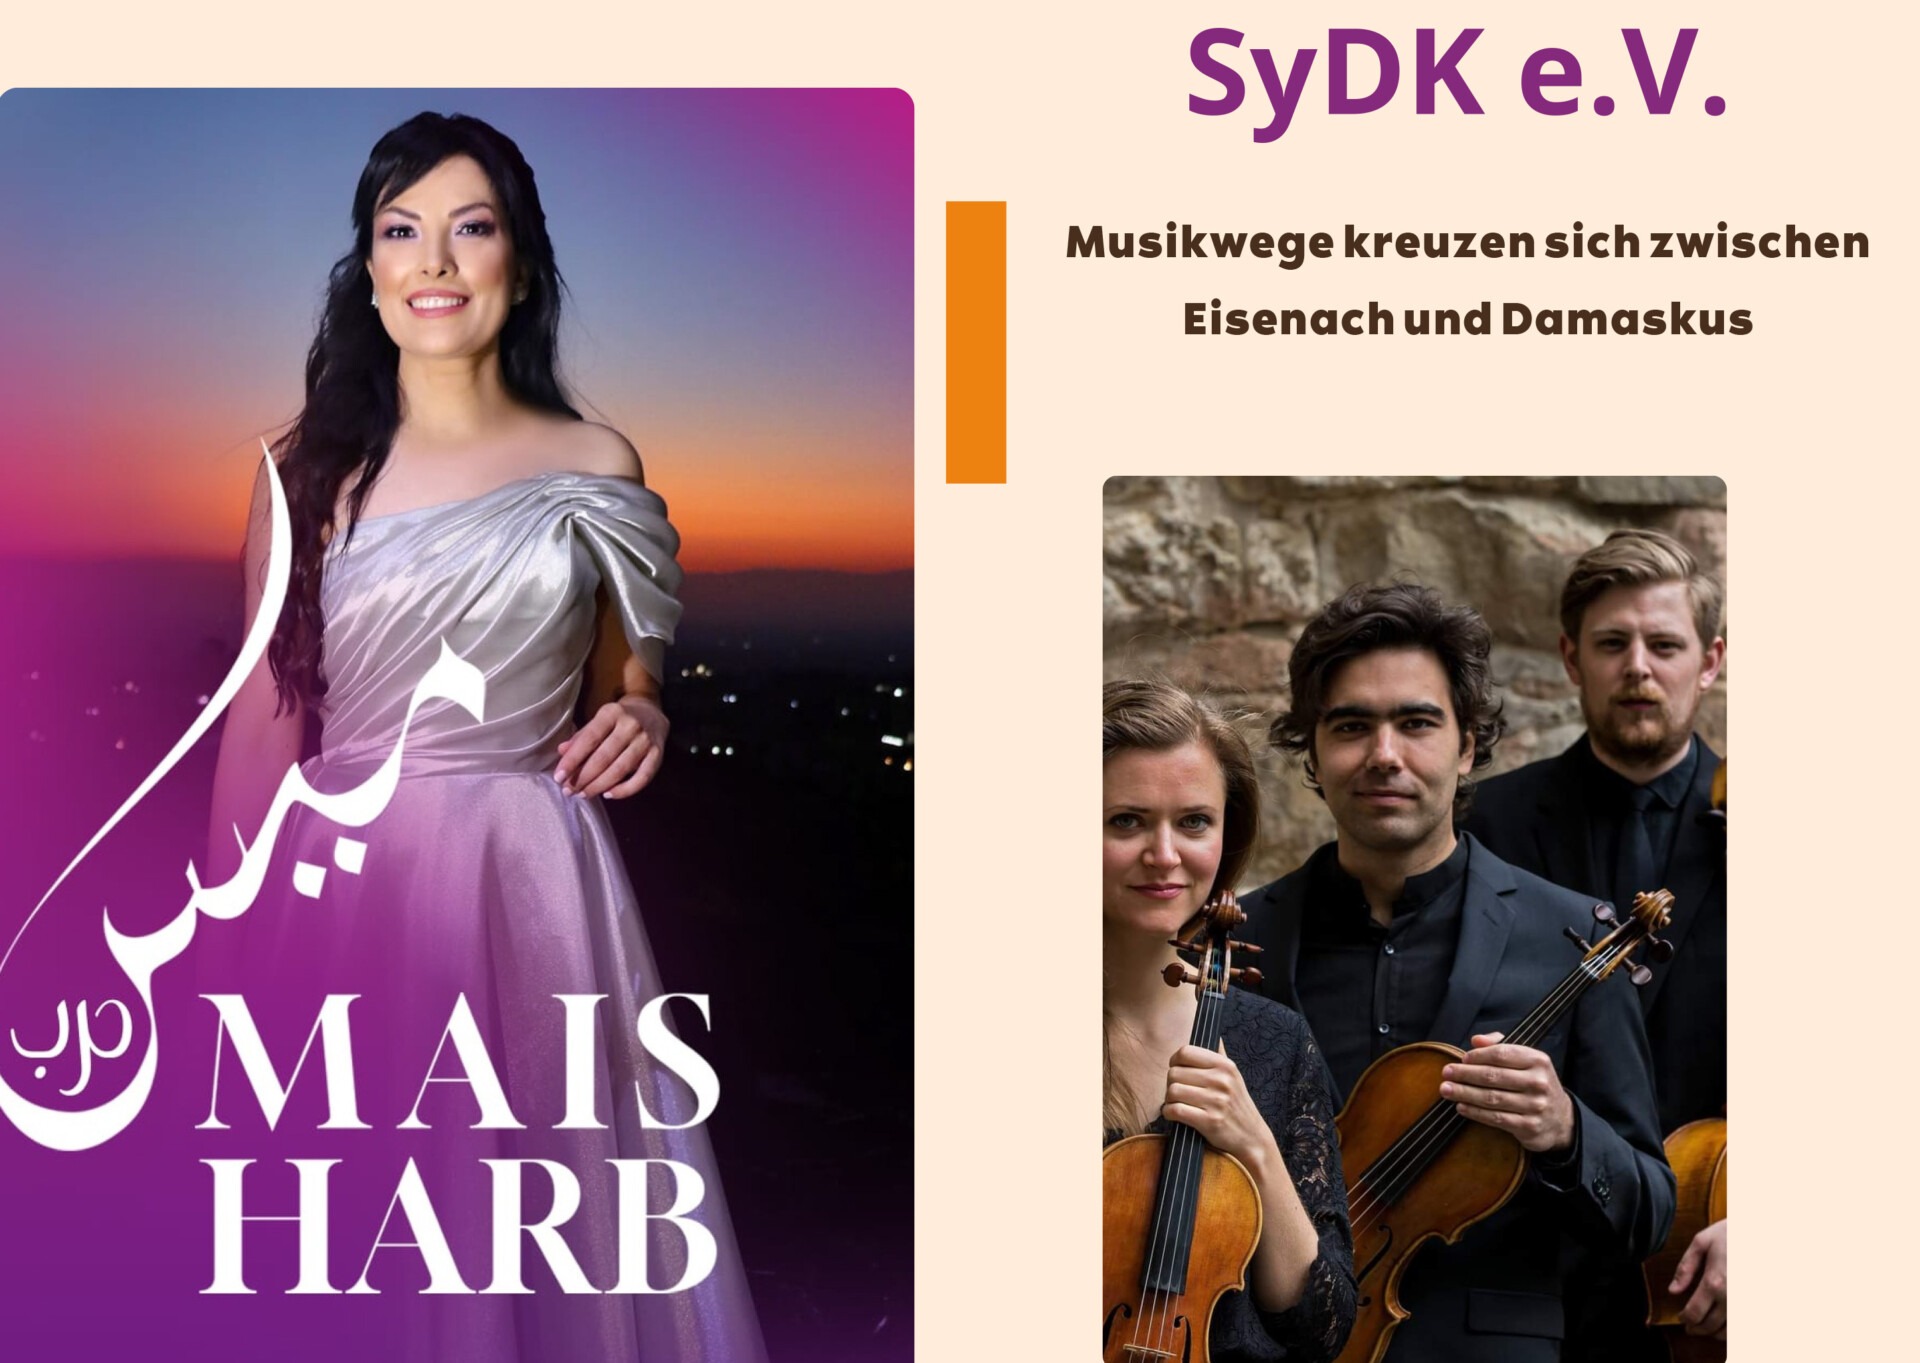 Musikalischer Abend mit Mais Harb und weiteren Künstlern zum Gründungsjubiläum des SyDK e.V.